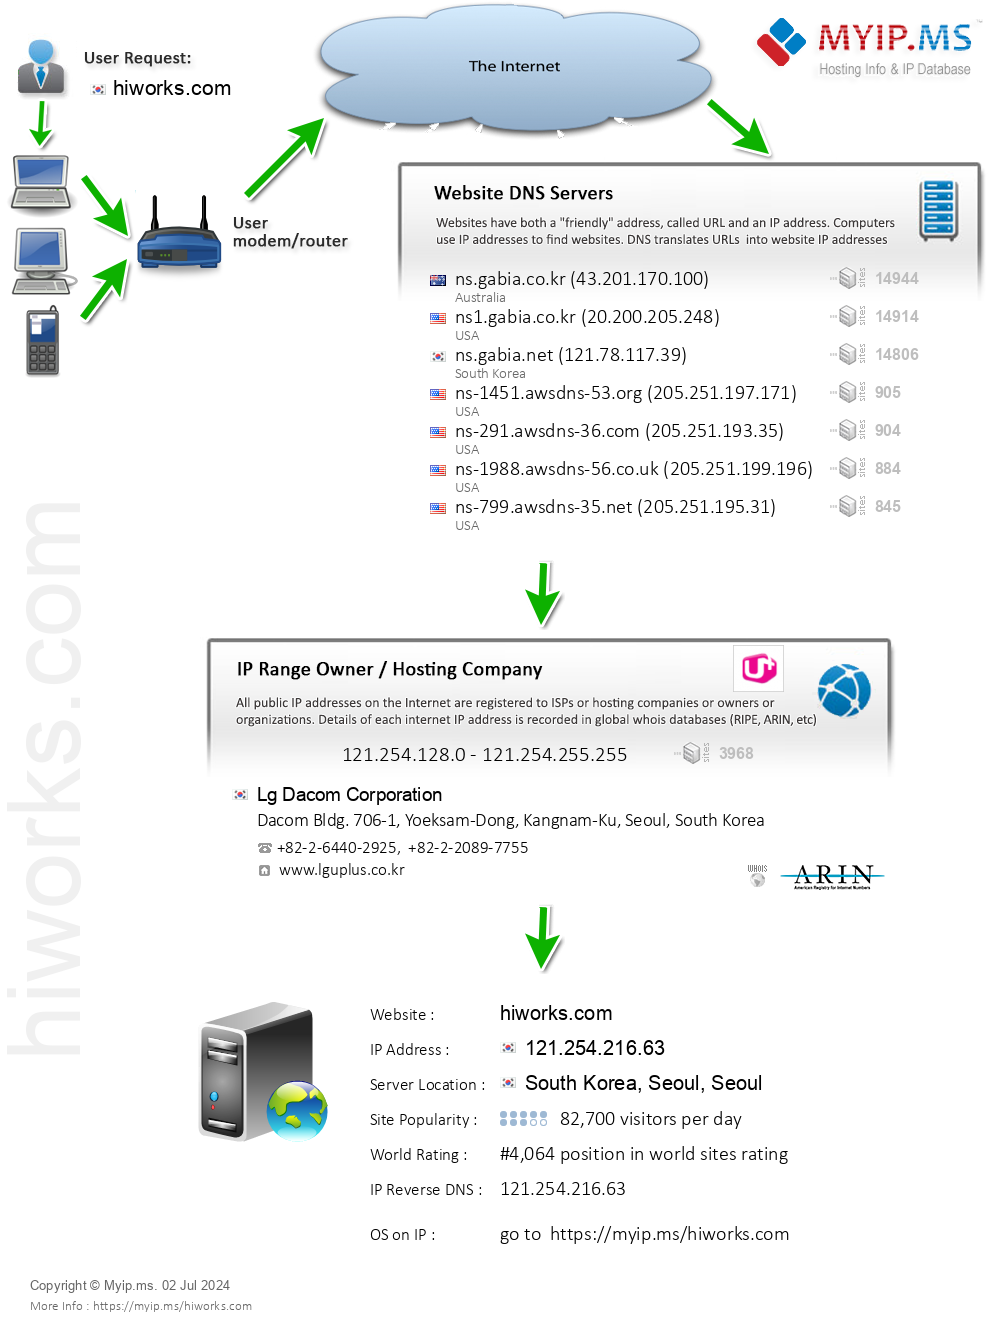 Hiworks.com - Website Hosting Visual IP Diagram